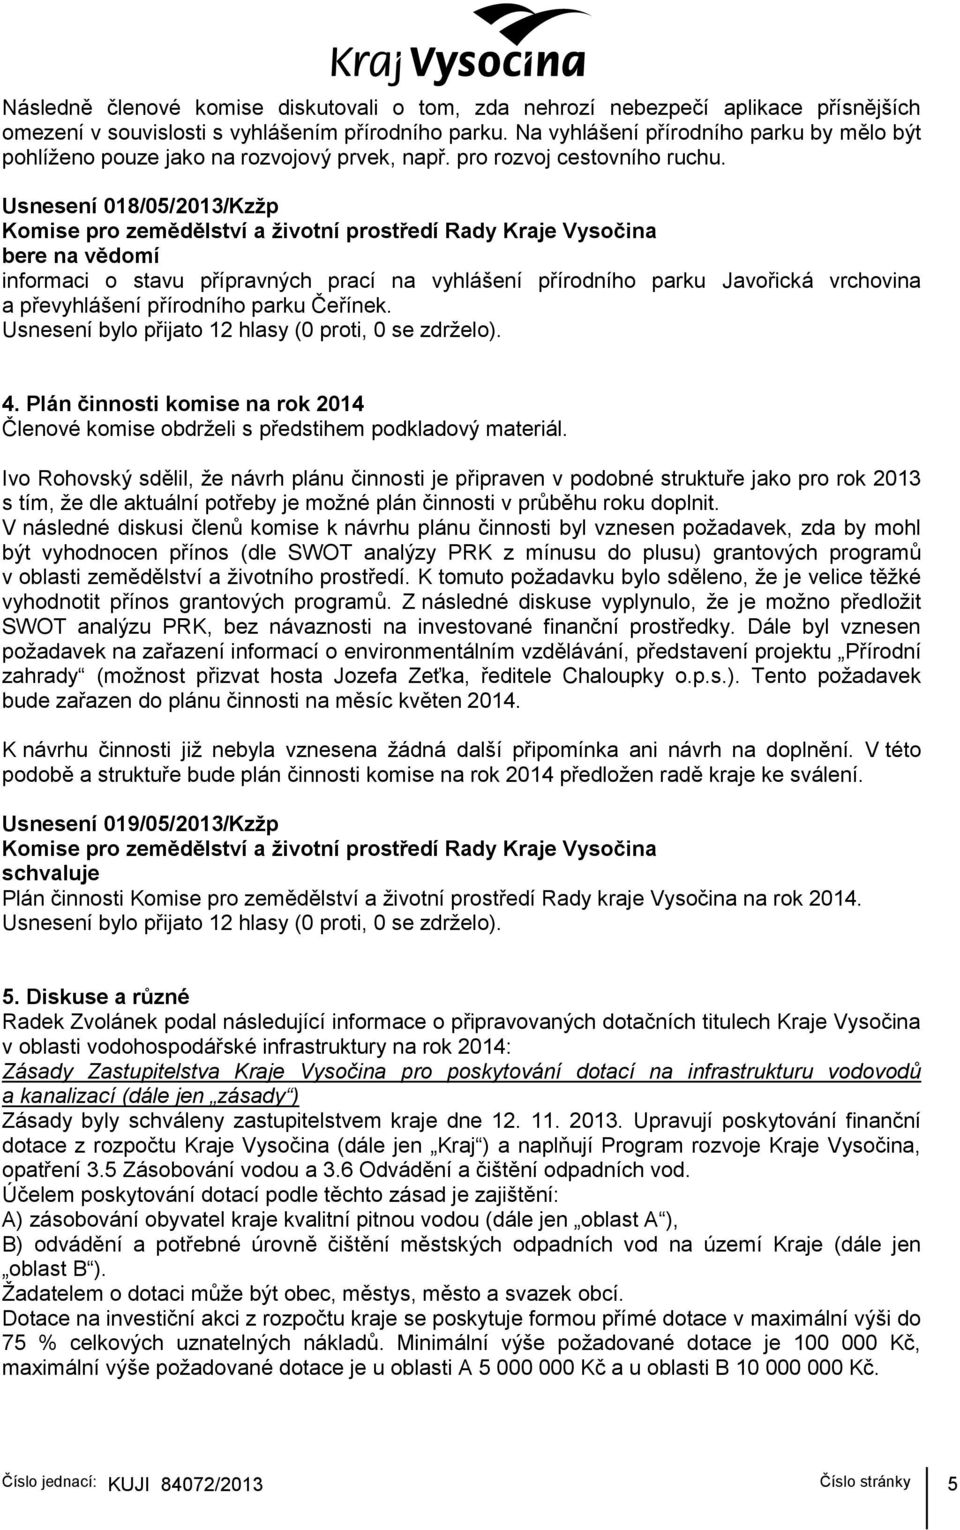 Usnesení 018/05/2013/Kzžp bere na vědomí informaci o stavu přípravných prací na vyhlášení přírodního parku Javořická vrchovina a převyhlášení přírodního parku Čeřínek. 4.